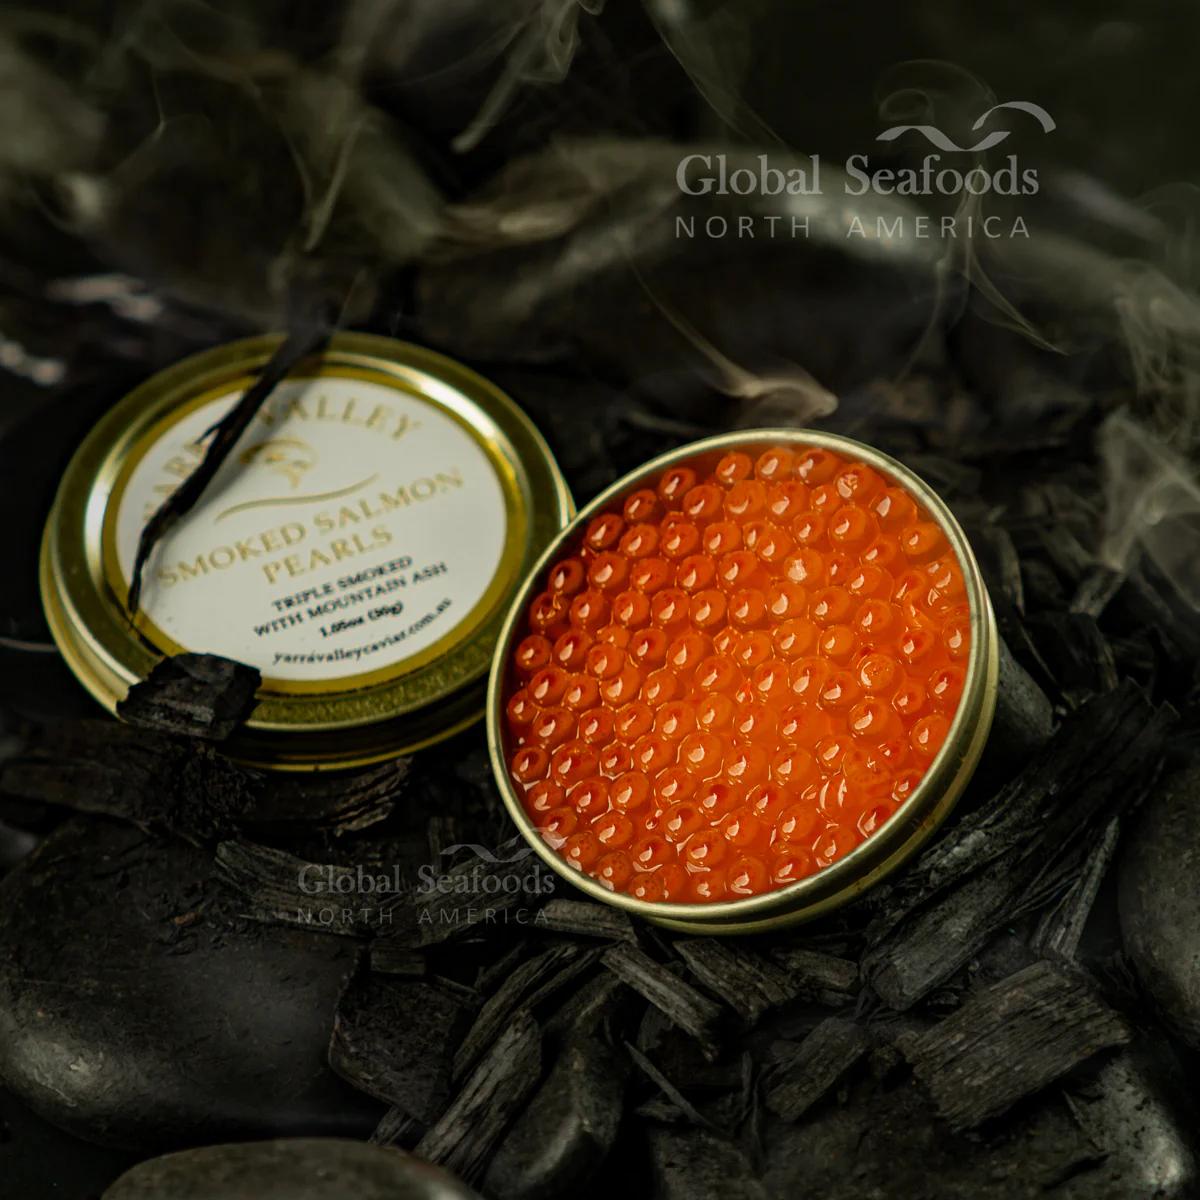 smoked salmon pearls - How long does smoked salmon caviar last